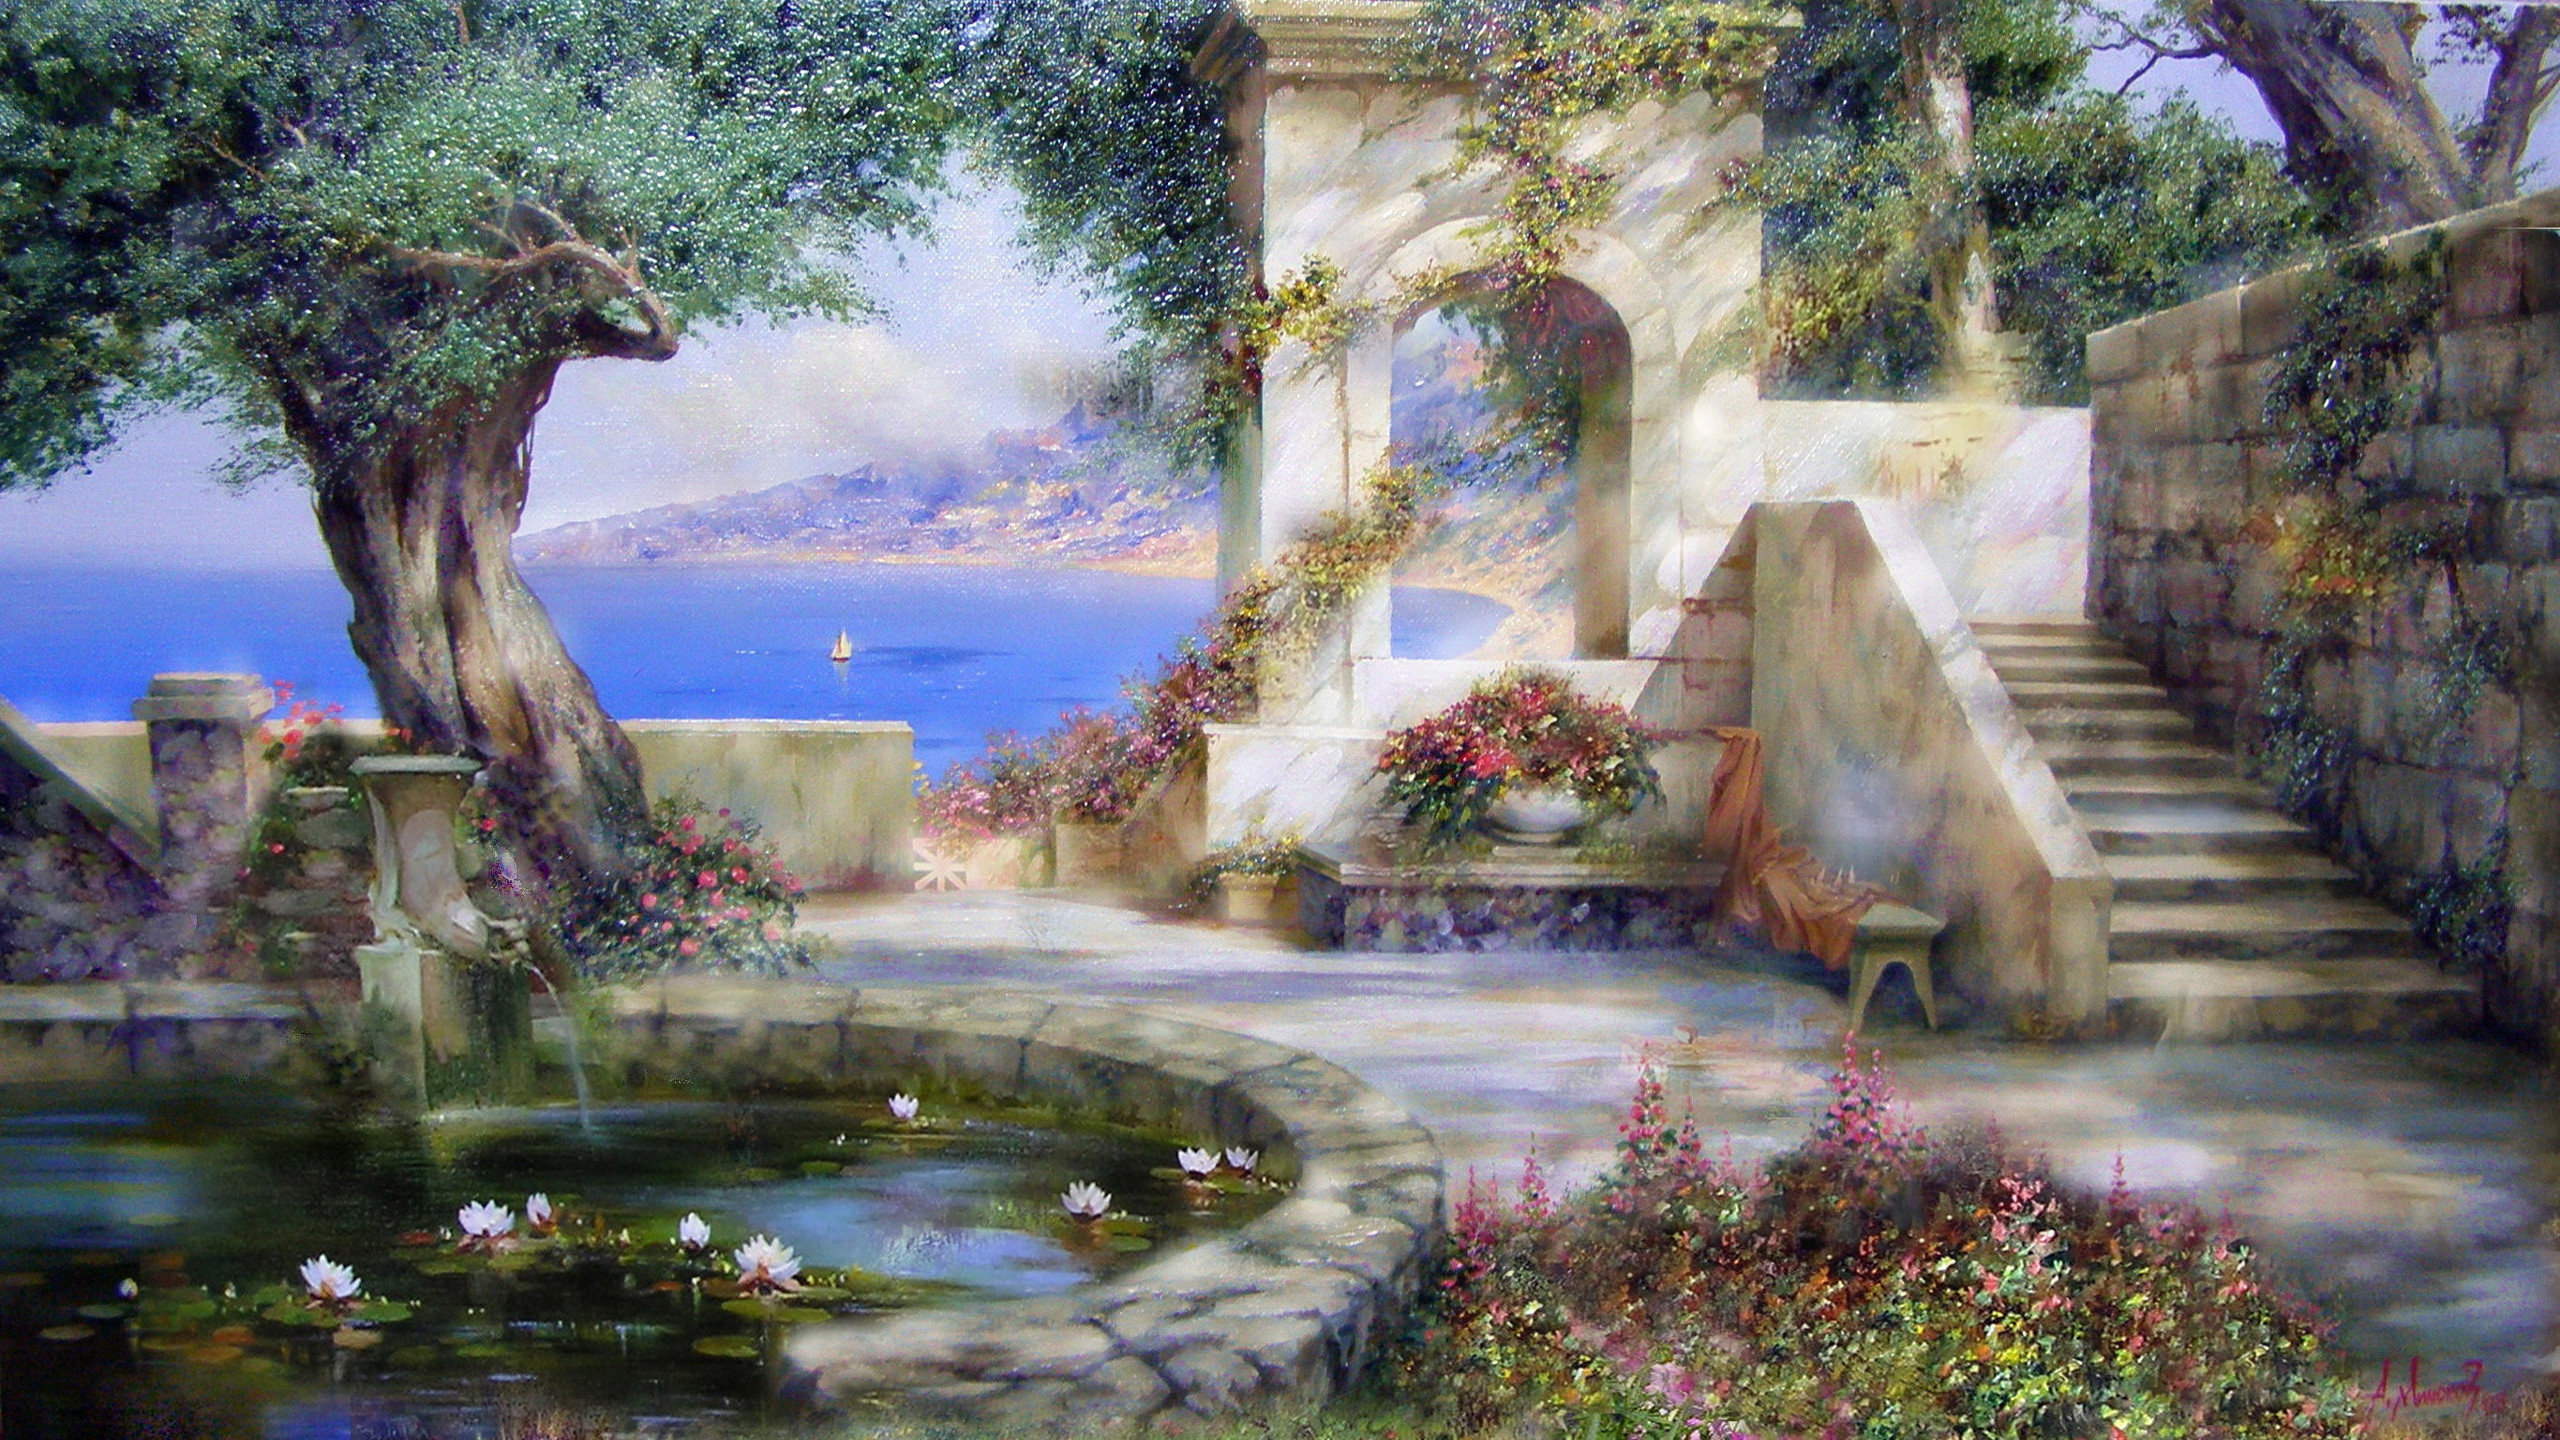 Free Landscape Painting Art, Computer Desktop Wallpapers, - Desktop Wallpaper Landscape Art - HD Wallpaper 